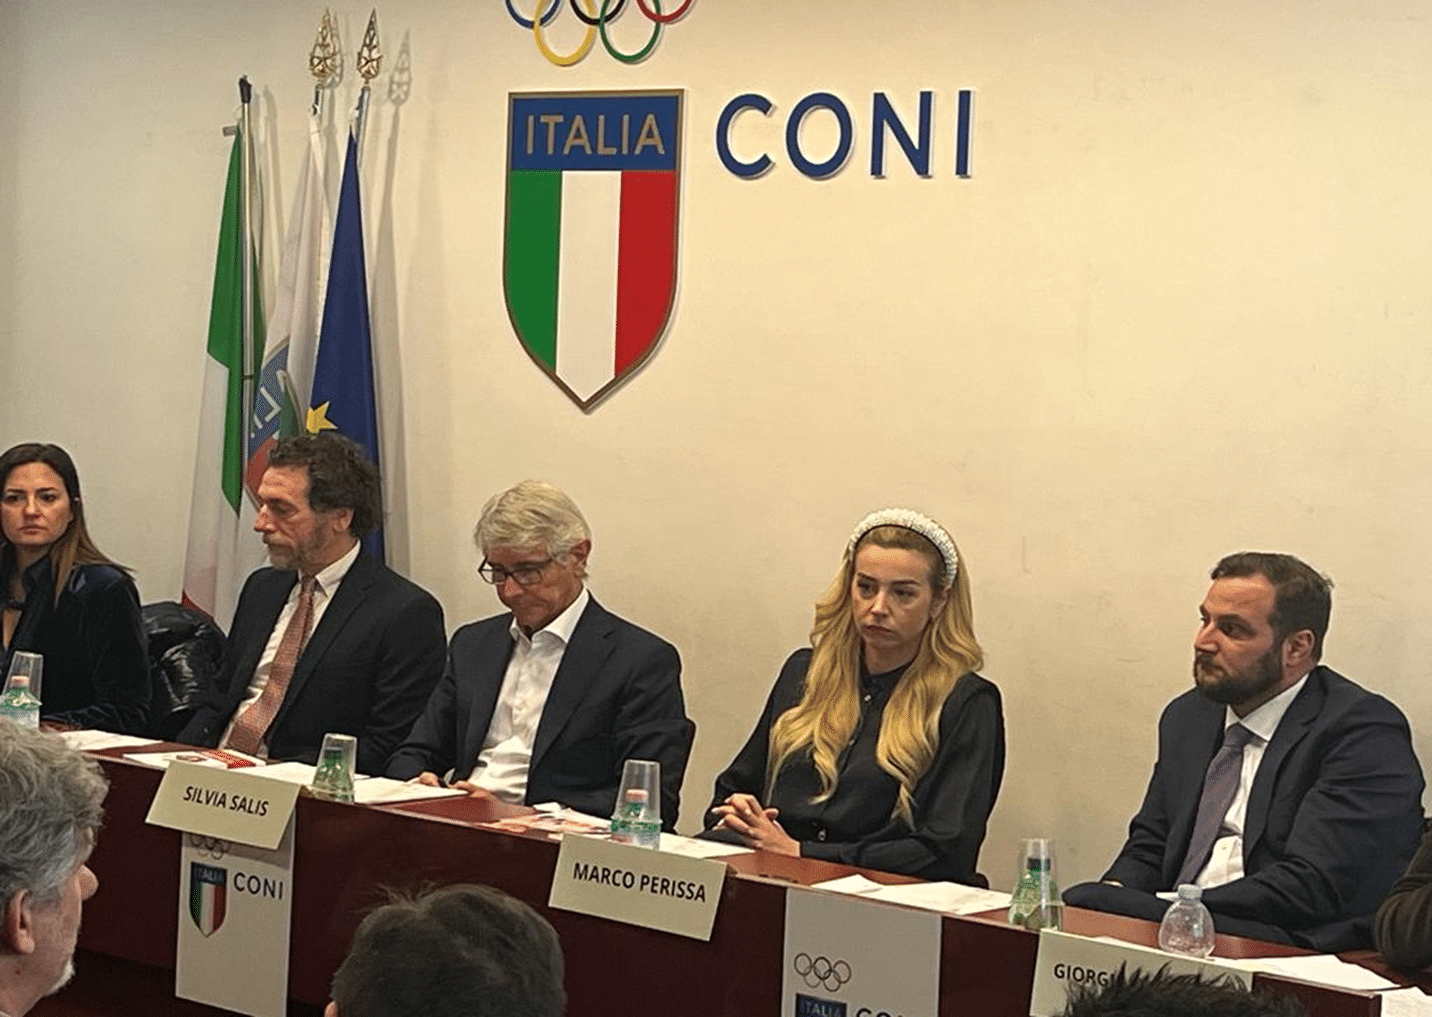 Quaser-Zertifizierung: Das Nationale Olympische Komitee Italiens bestätigt sein Interesse an der Anti-Mobbing-Zertifizierung in Sportarten.